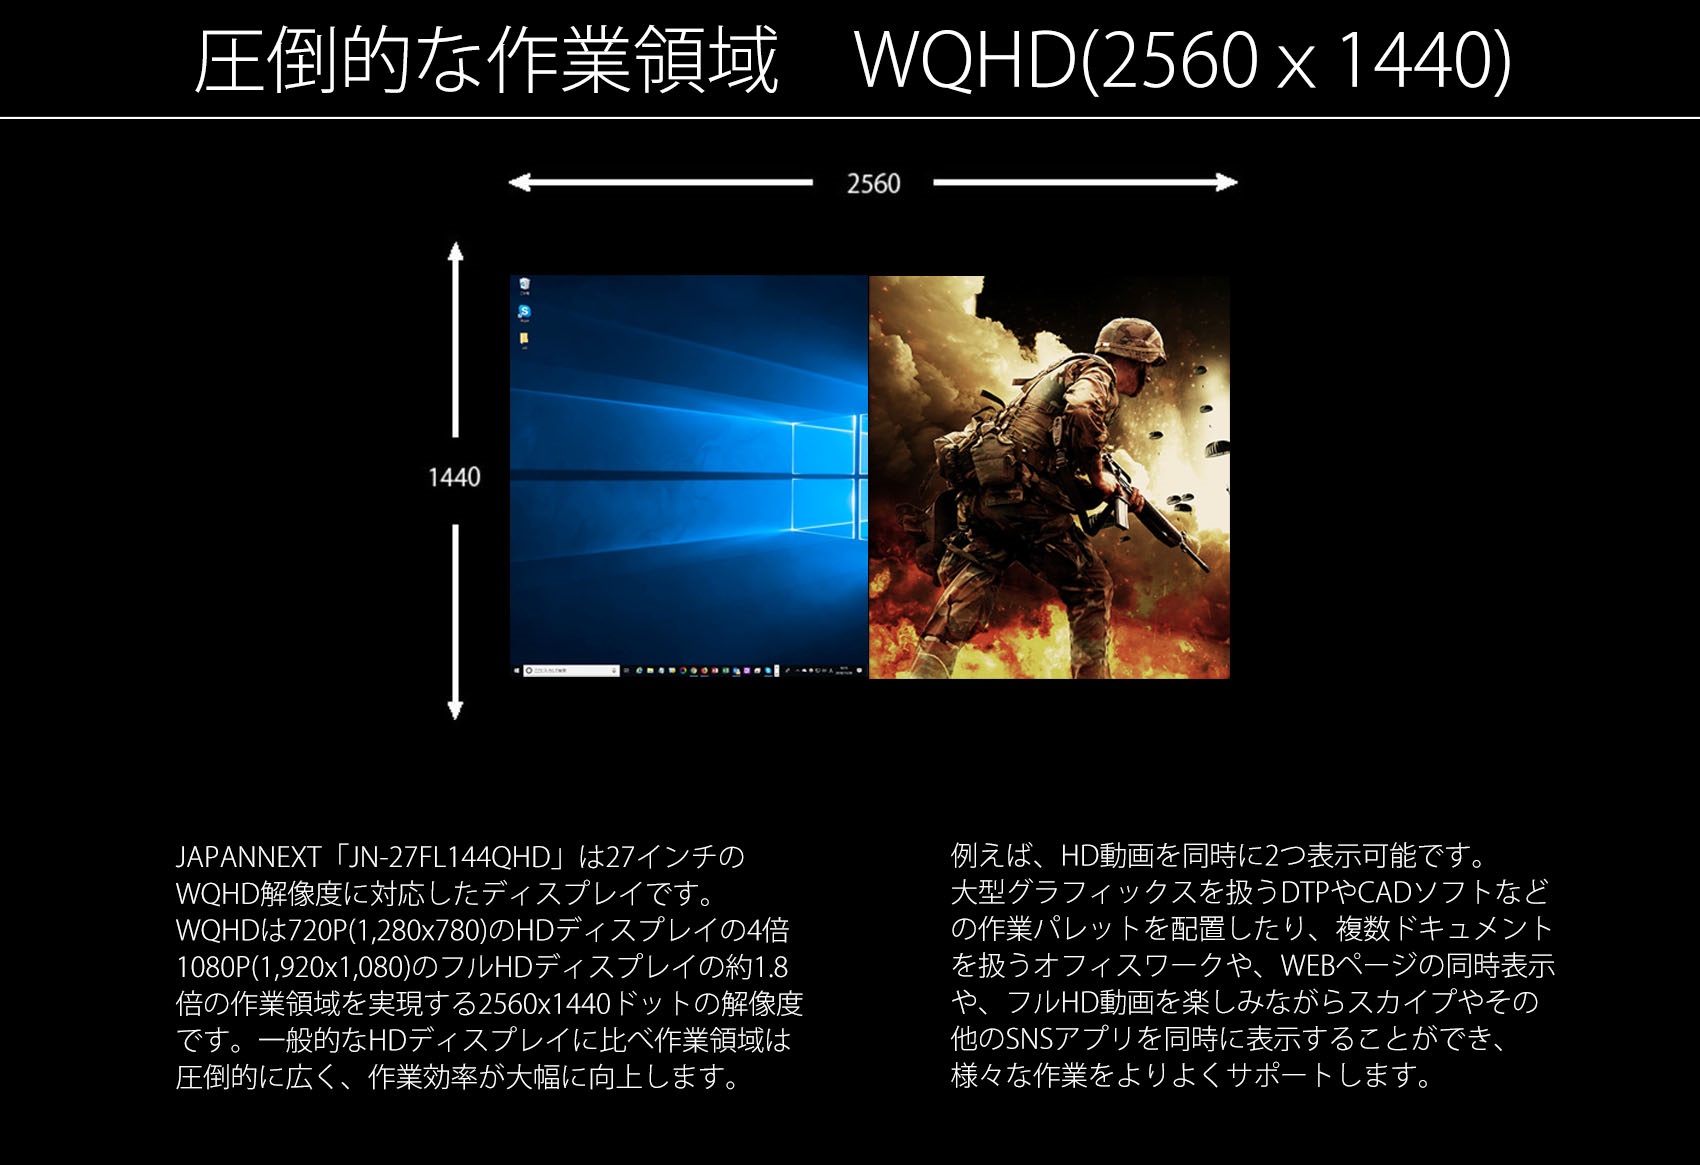 JAPANNEXT「JN-27FL144QHD」は27インチの」 WQHD解像度に対応したディスプレイです。 WQHDは720P(1,280×780)のHDディスプレイの4倍 1080P(1,920x1,080)のフルHDディスプレイの約1.8 倍の作業領域を実現する2560x1440ドットの解像度 です。一般的なHDディスプレイに比べ作業領域は、 圧倒的に広く、作業効率が大幅に向上します。 例えば、HD動画を同時に2つ表示可能です。 大型グラフィックスを扱うDTPやCADソフトなど、 の作業パレットを配置したり、複数ドキュメント を扱うオフィスワークや、WEBページの同時表示 や、フルHD動画を楽しみながらスカイプやその、 他のSNSアプリを同時に表示することができ、 様々な作業をよりよくサポートします。